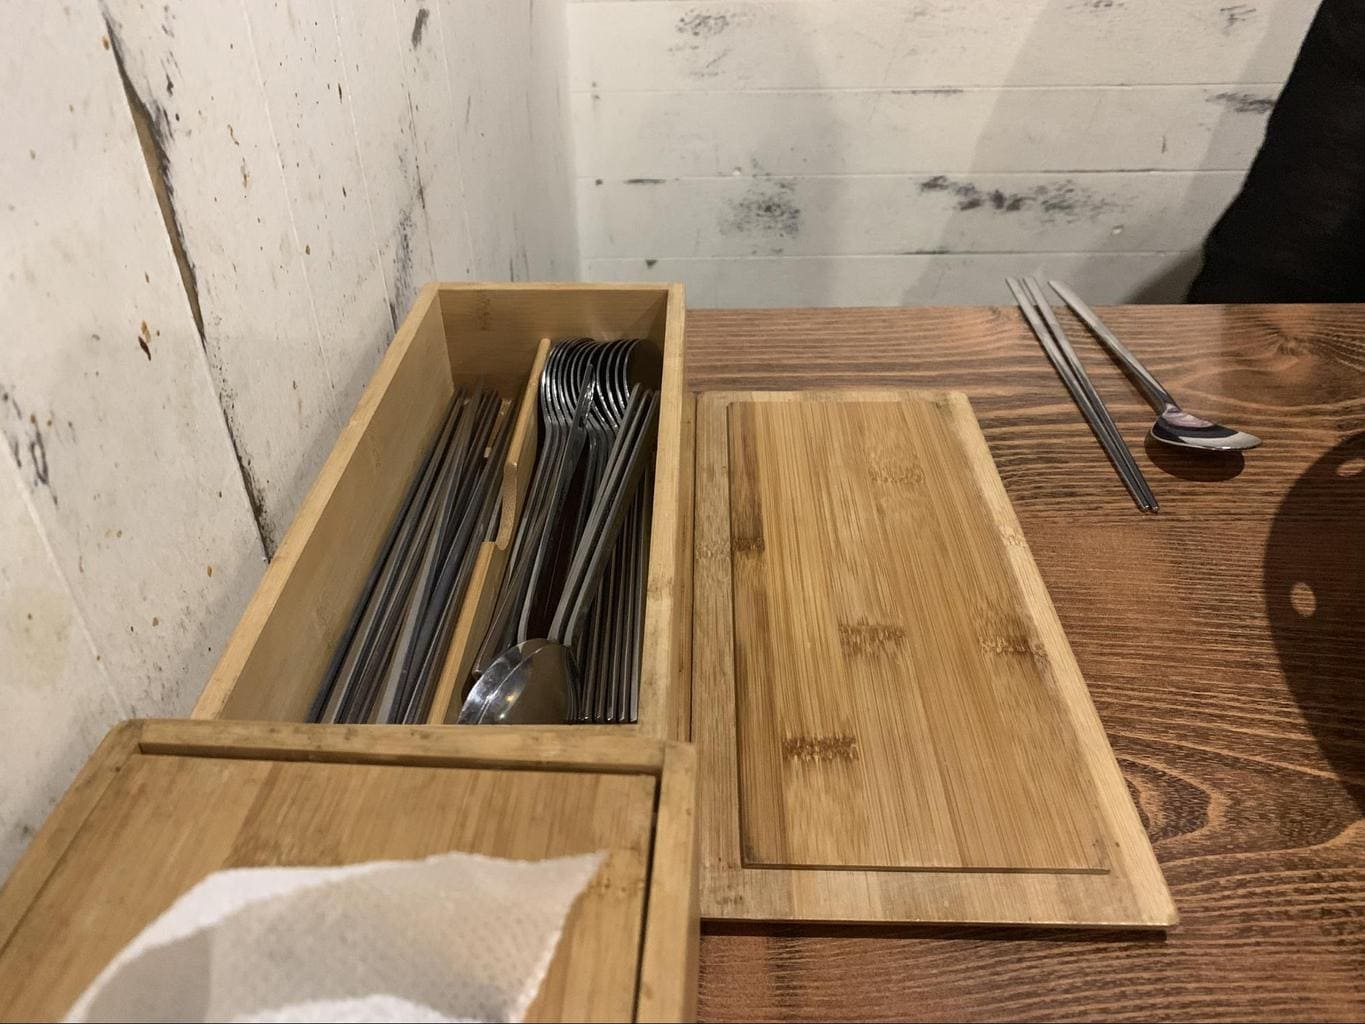 Cutlery is hidden in a box